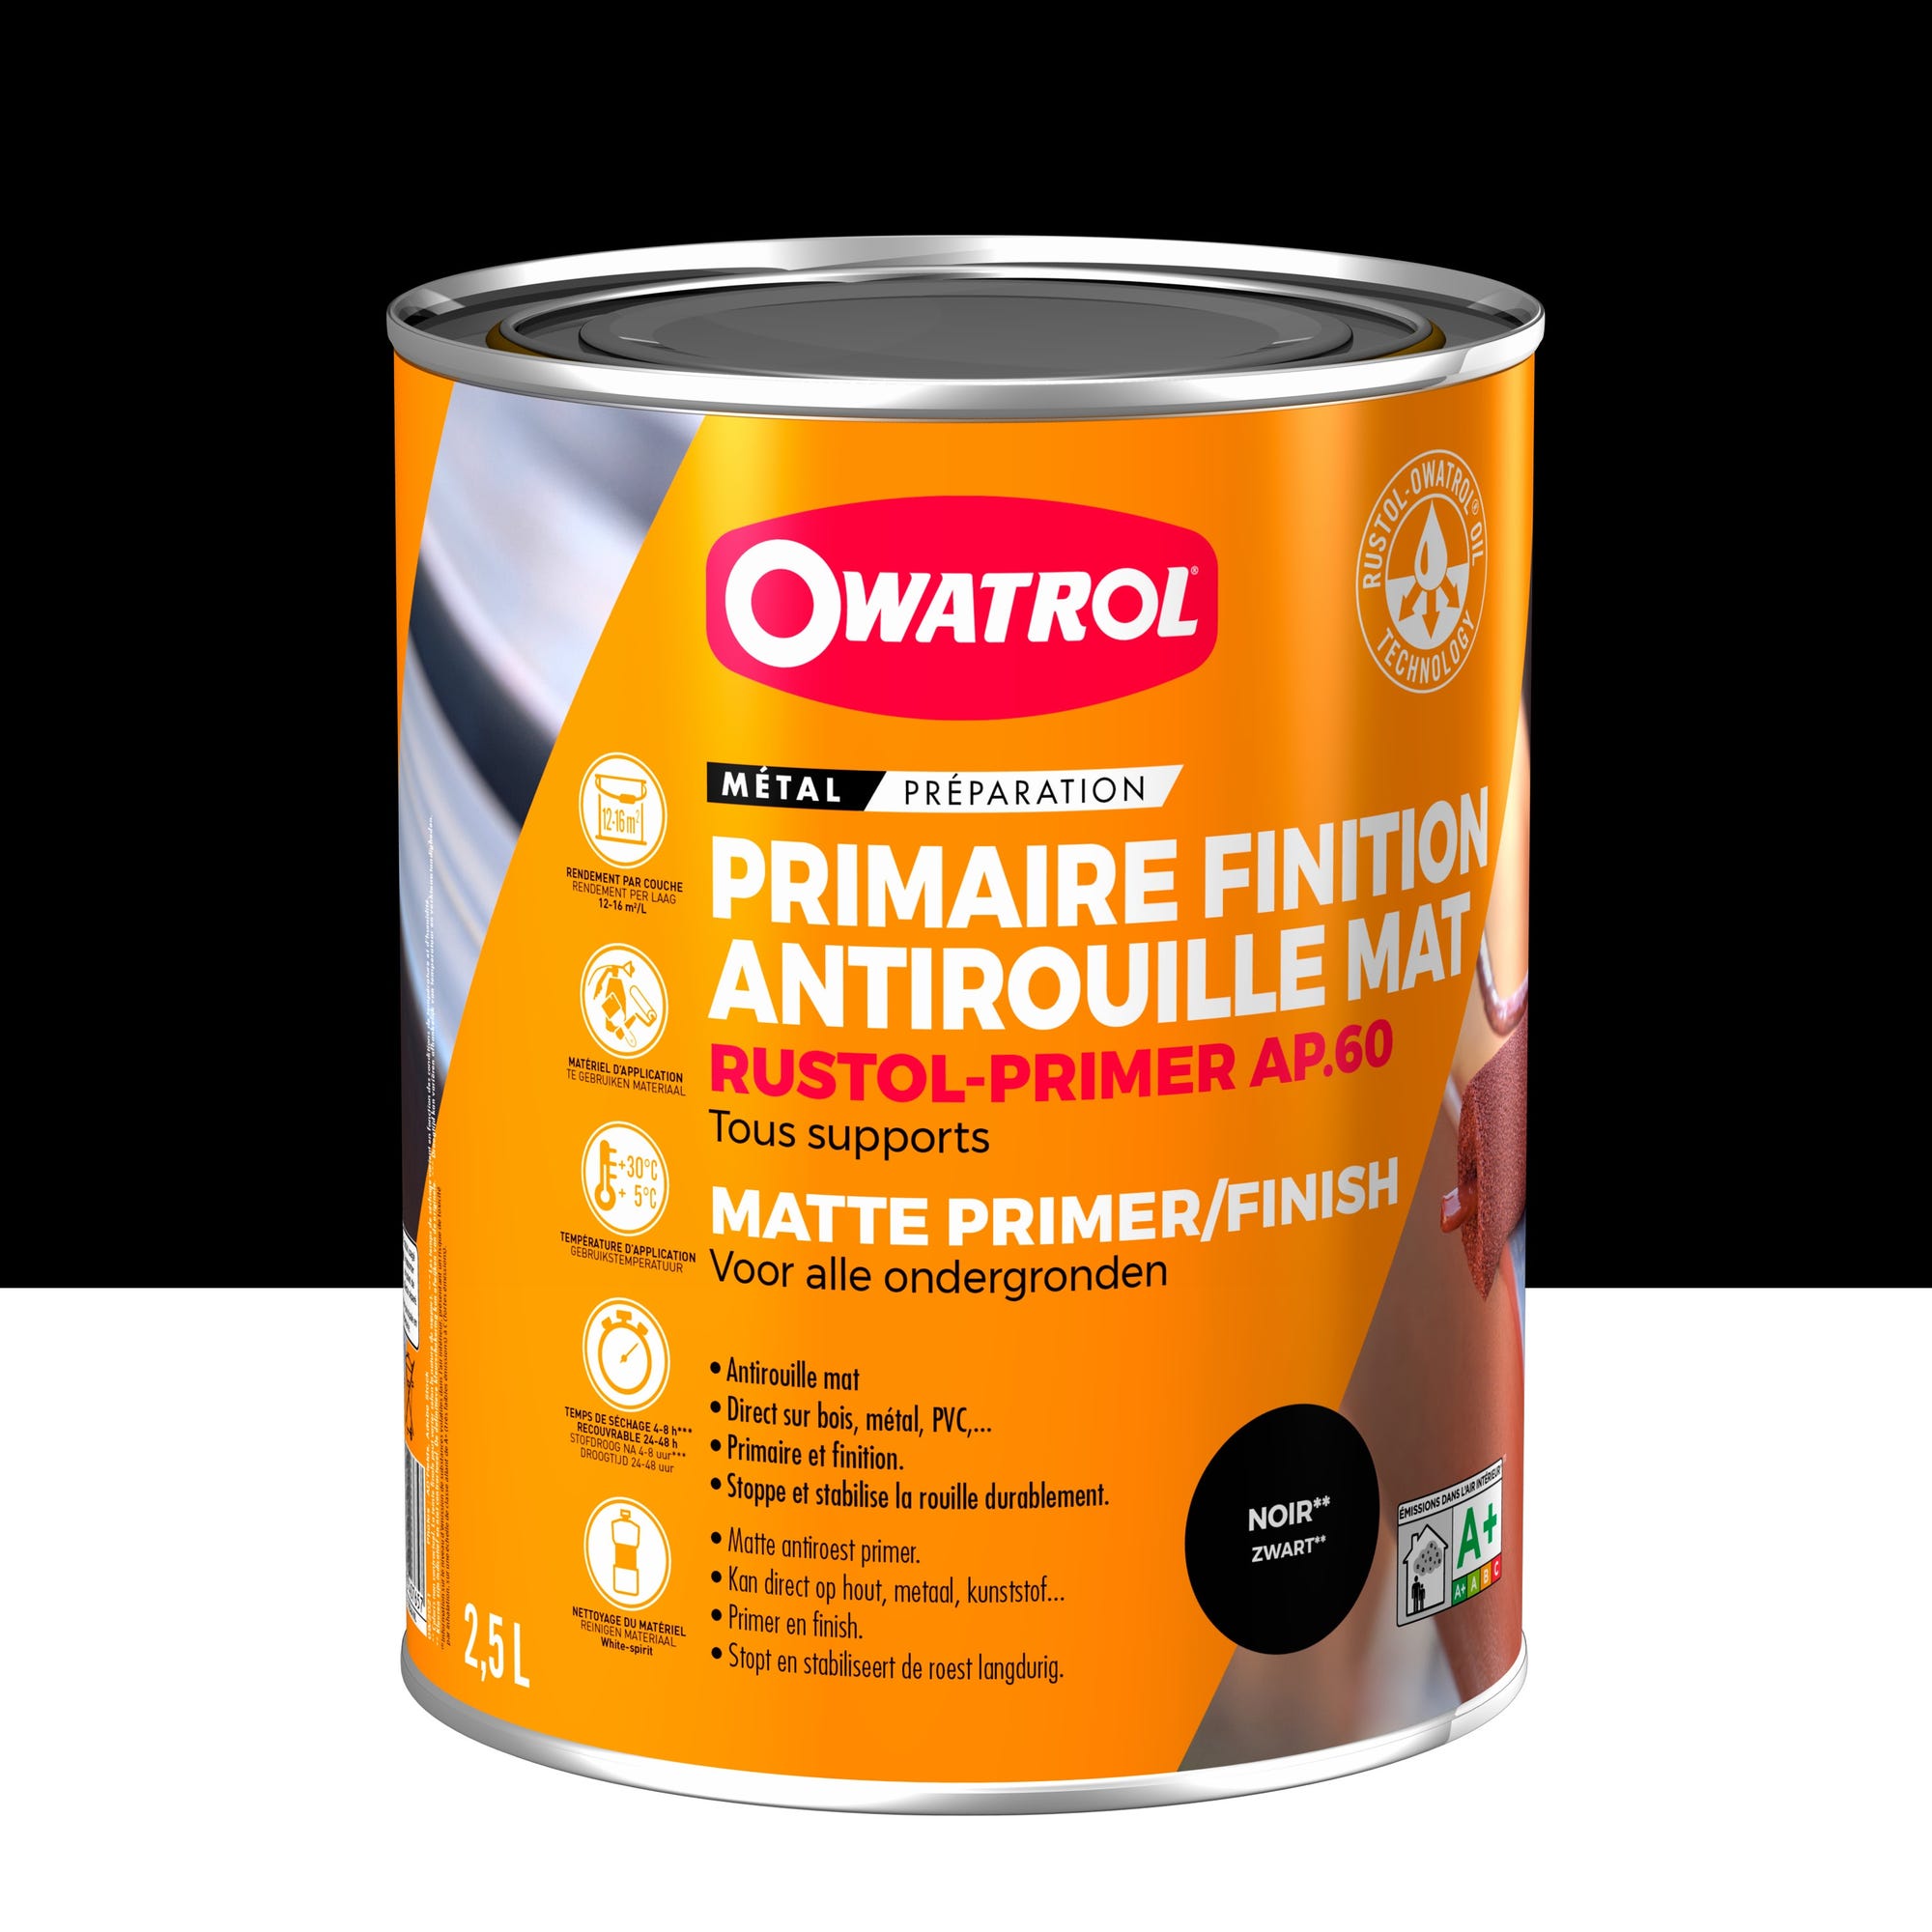 Primaire et finition mat antirouille Owatrol RUSTOL PRIMER AP 60 Noir (ow26) 2.5 litres 0